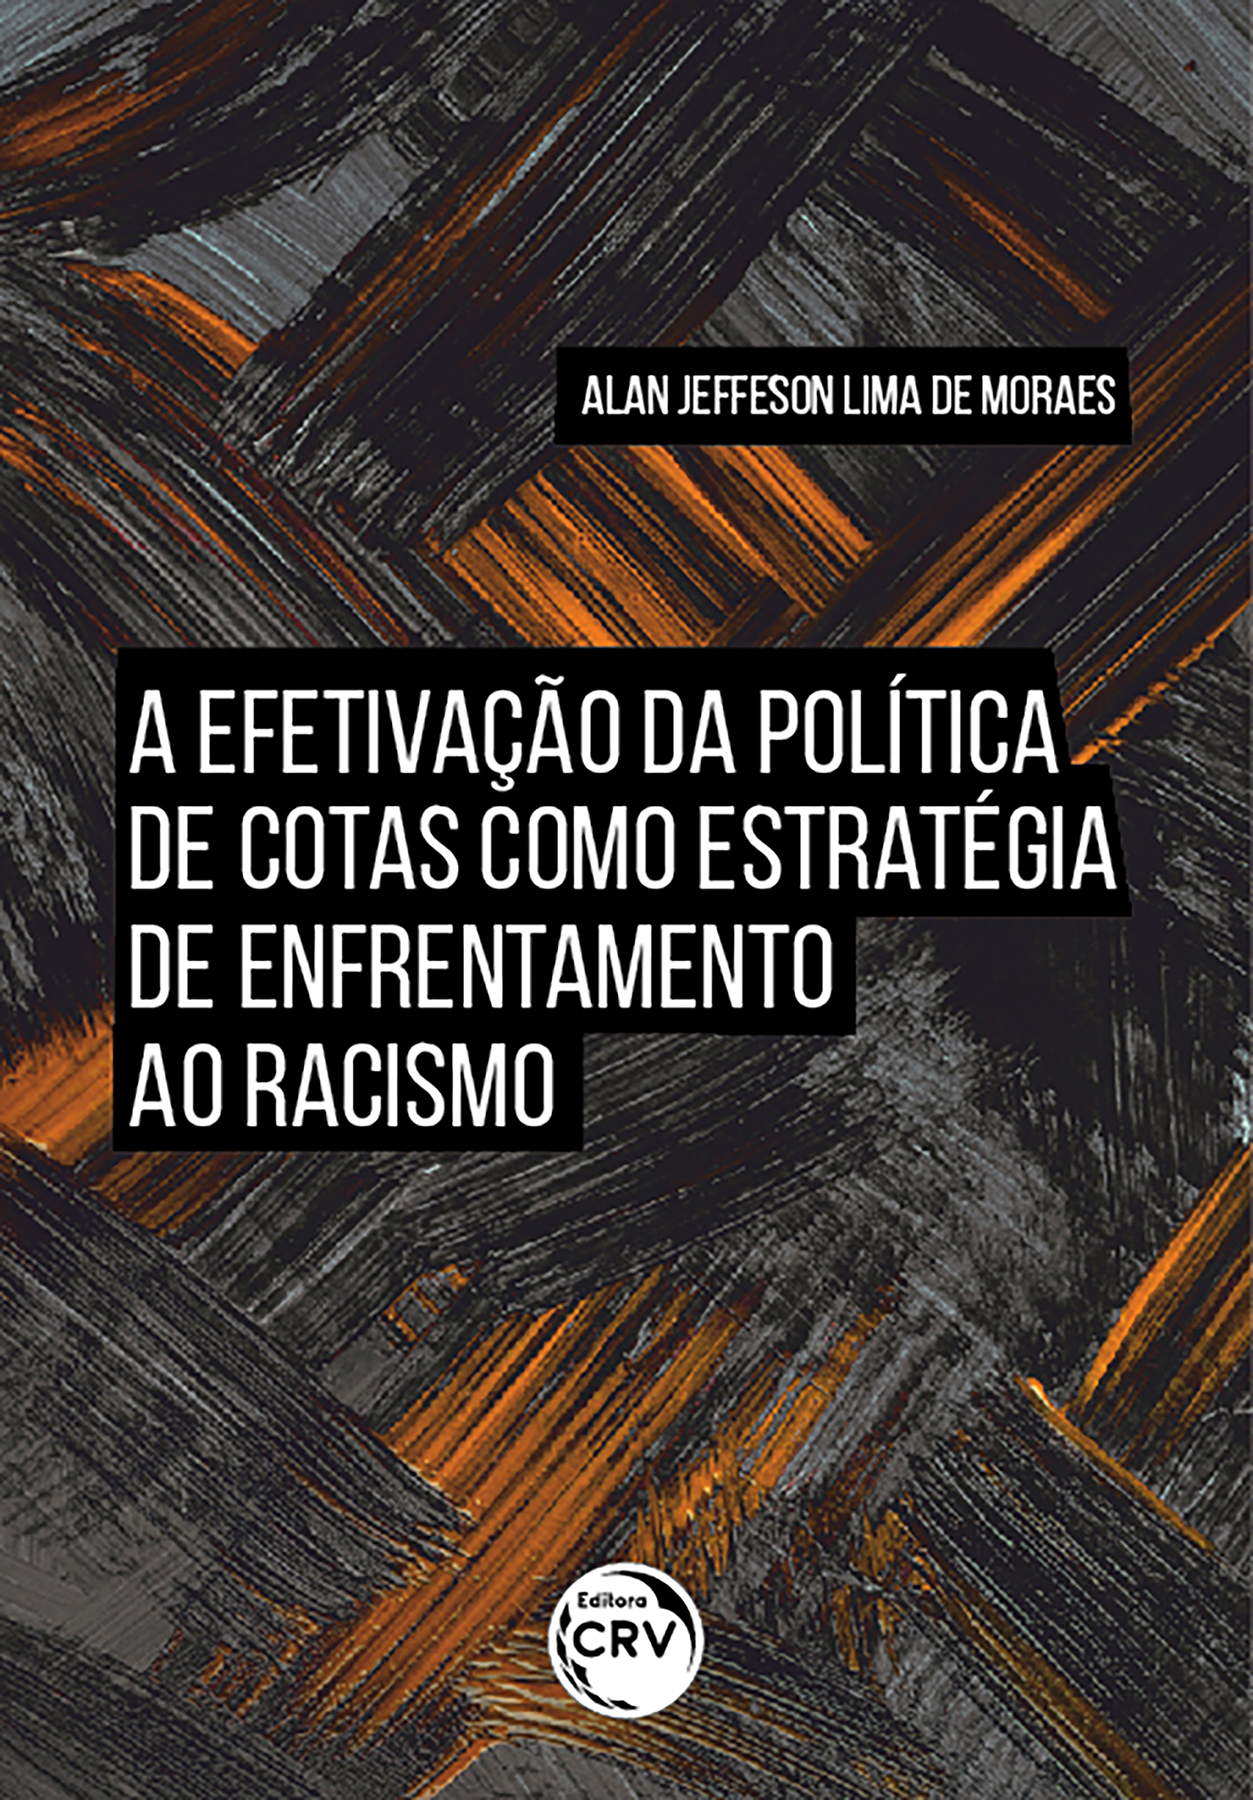 Capa do livro: A EFETIVAÇÃO DA POLÍTICA DE COTAS COMO ESTRATÉGIA DE ENFRENTAMENTO AO RACISMO